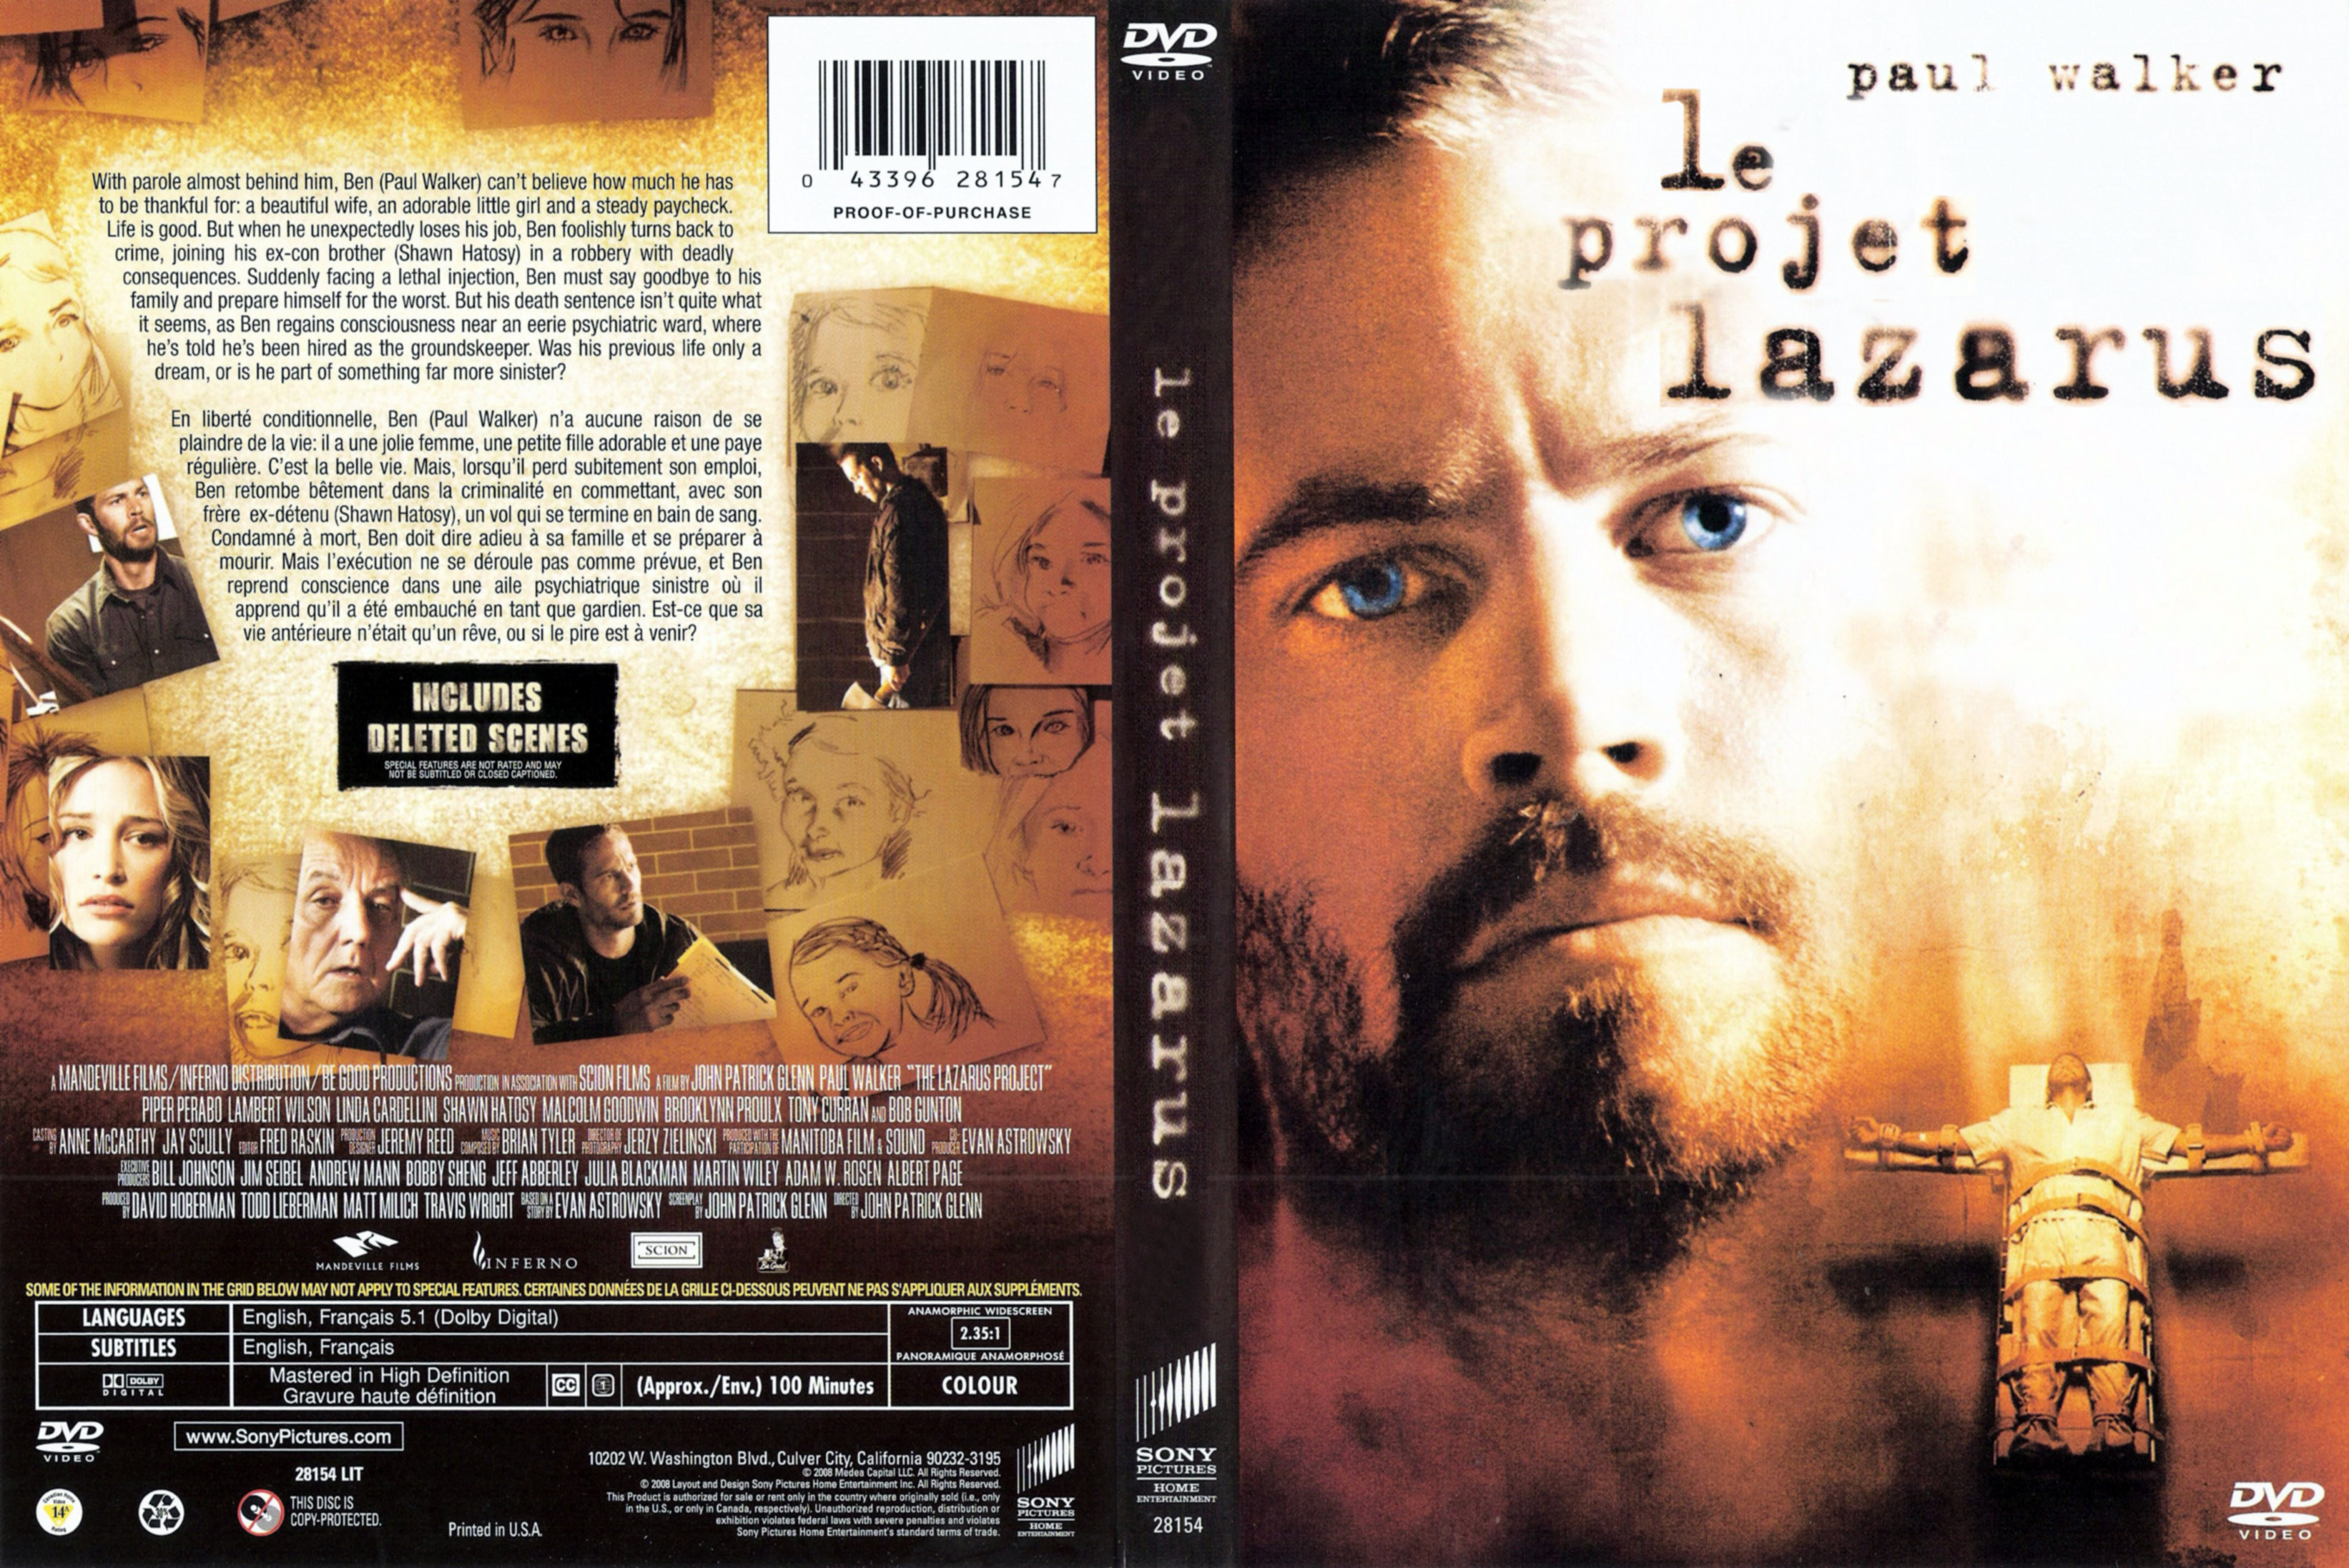 Jaquette DVD Le projet Lazarus